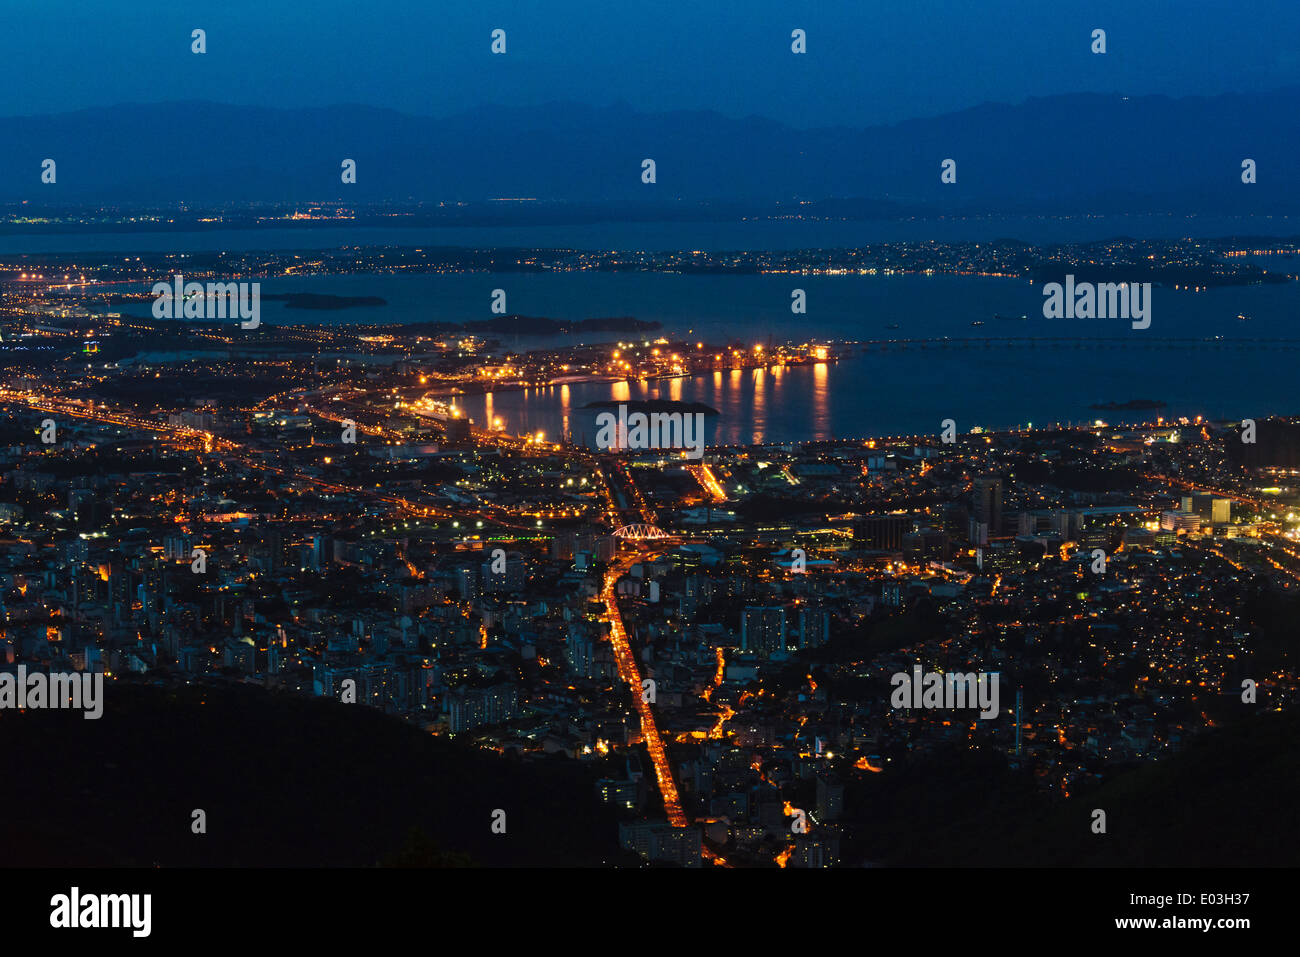 Cityscape in Botafogo Bay at night, Rio de Janeiro, Brazil Stock Photo